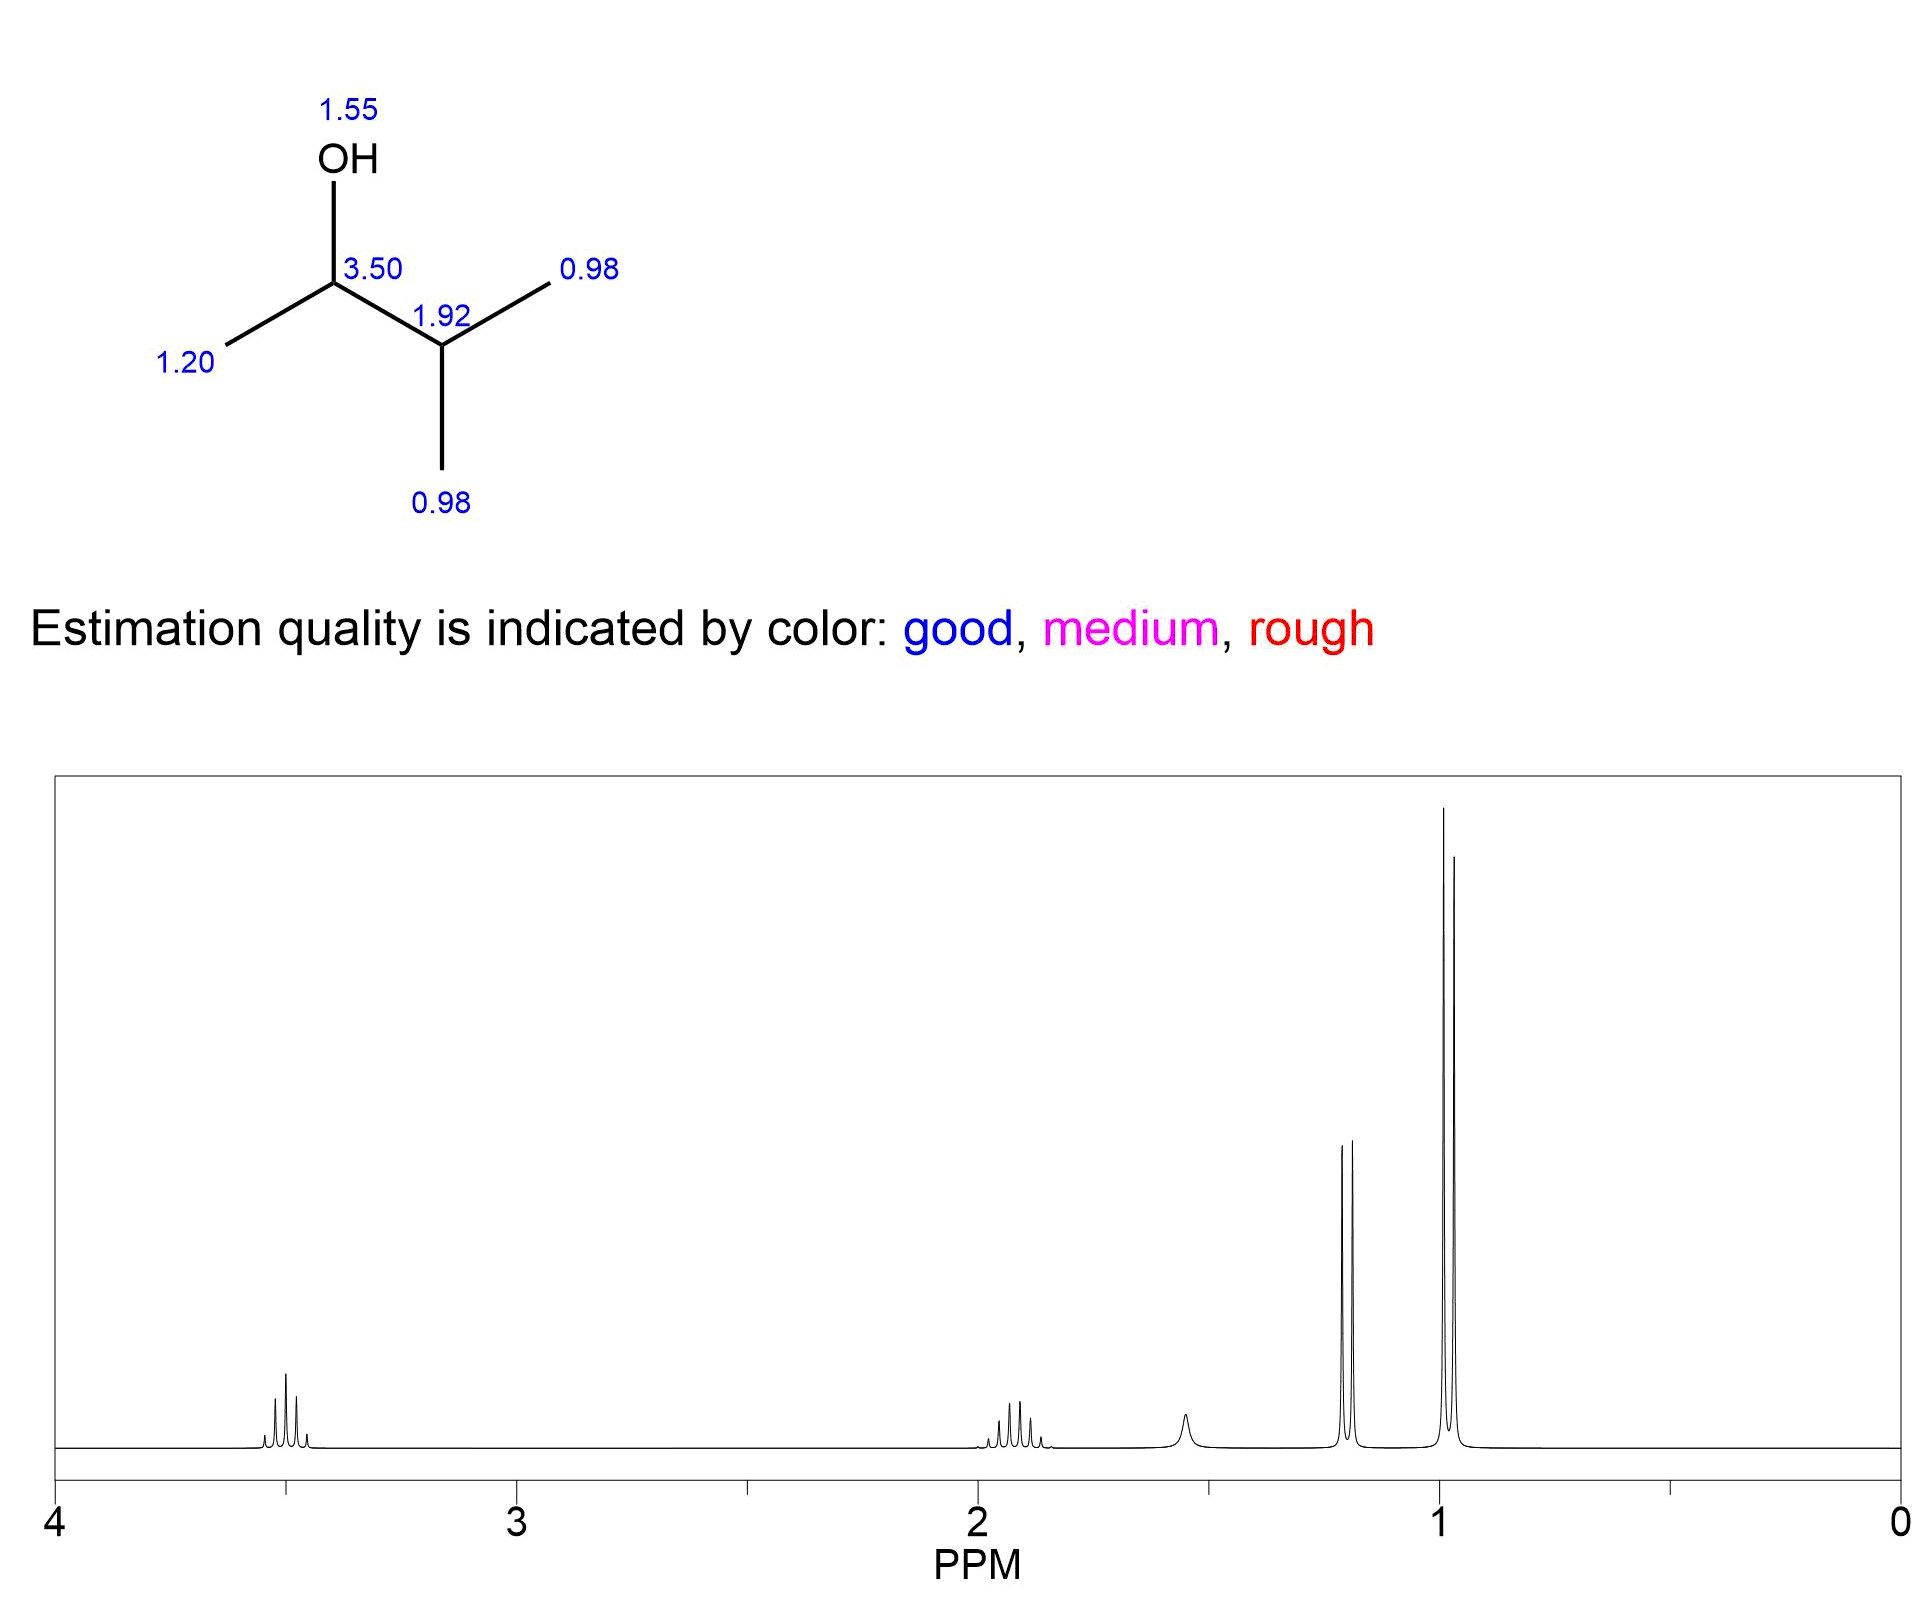 Espectro RMN de protón para la 3-metilbutan-2-ol